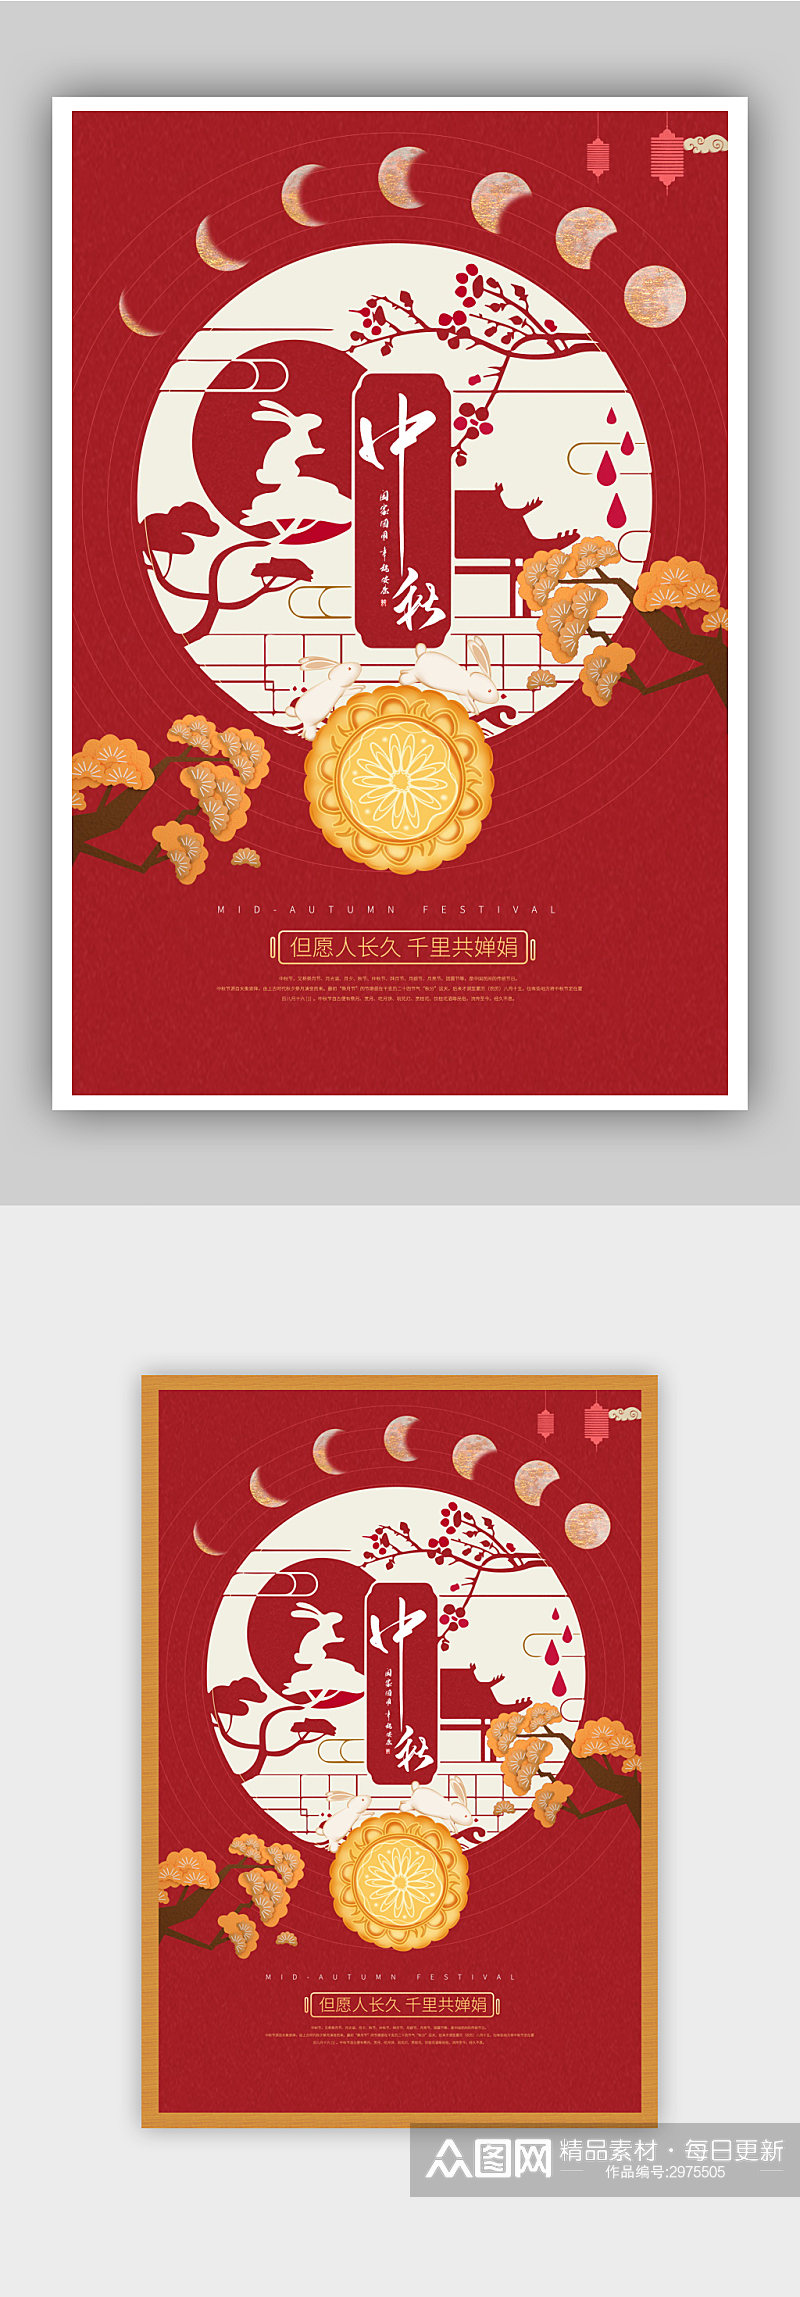 红色剪纸风大气中秋节宣传海报素材